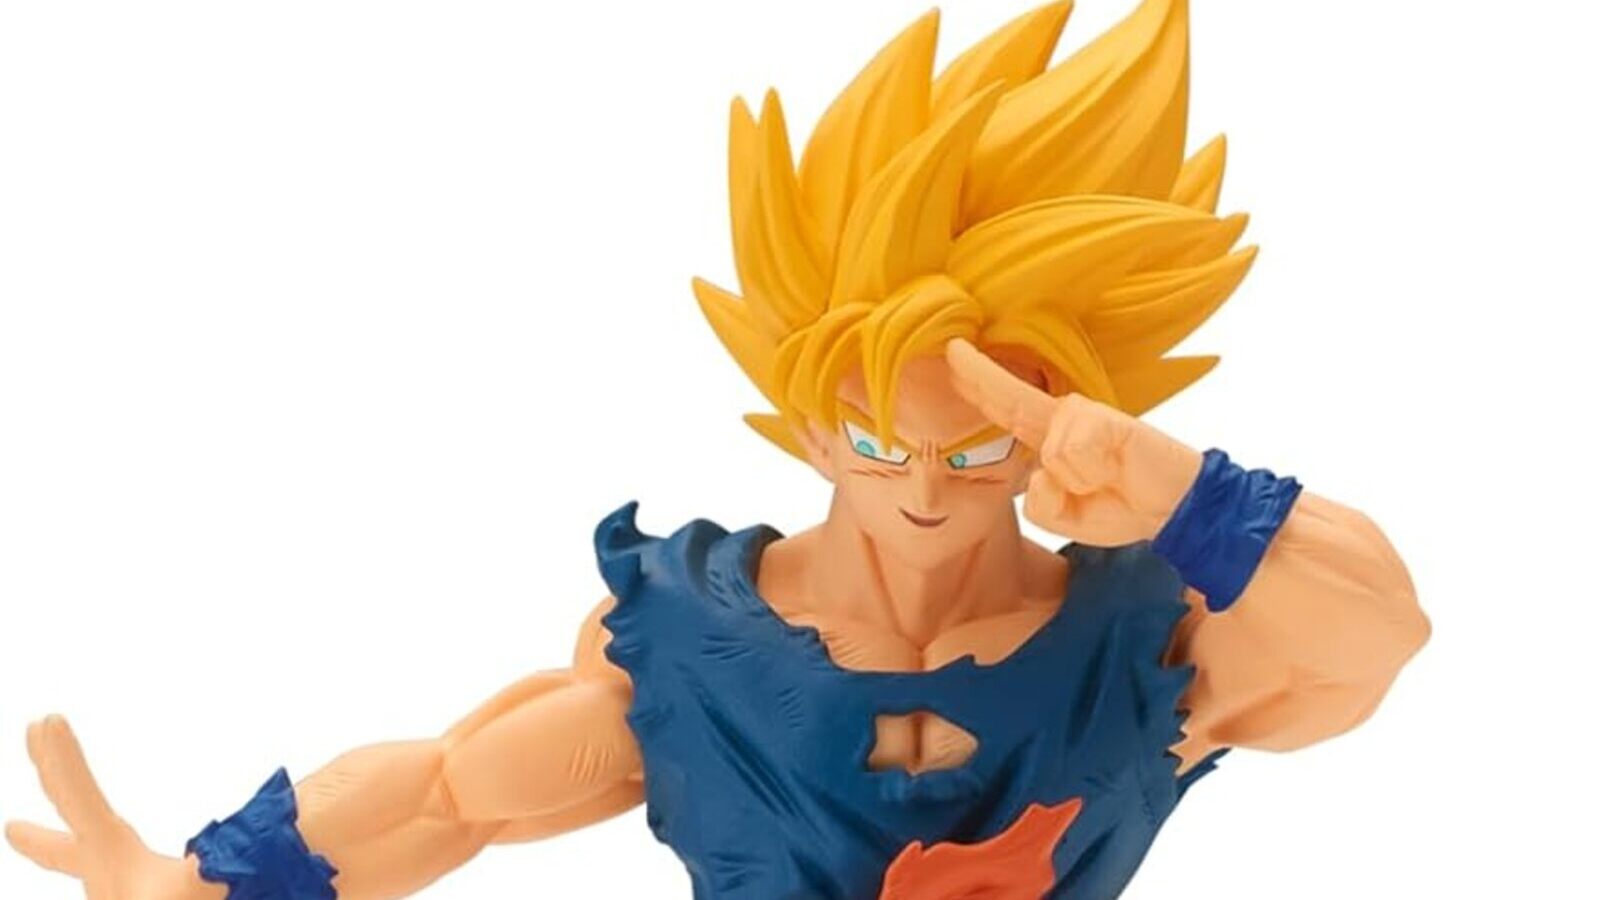 Dragon Ball: su Amazon la spettacolare figure Banpresto di Goku Super Sayan è scesa di prezzo